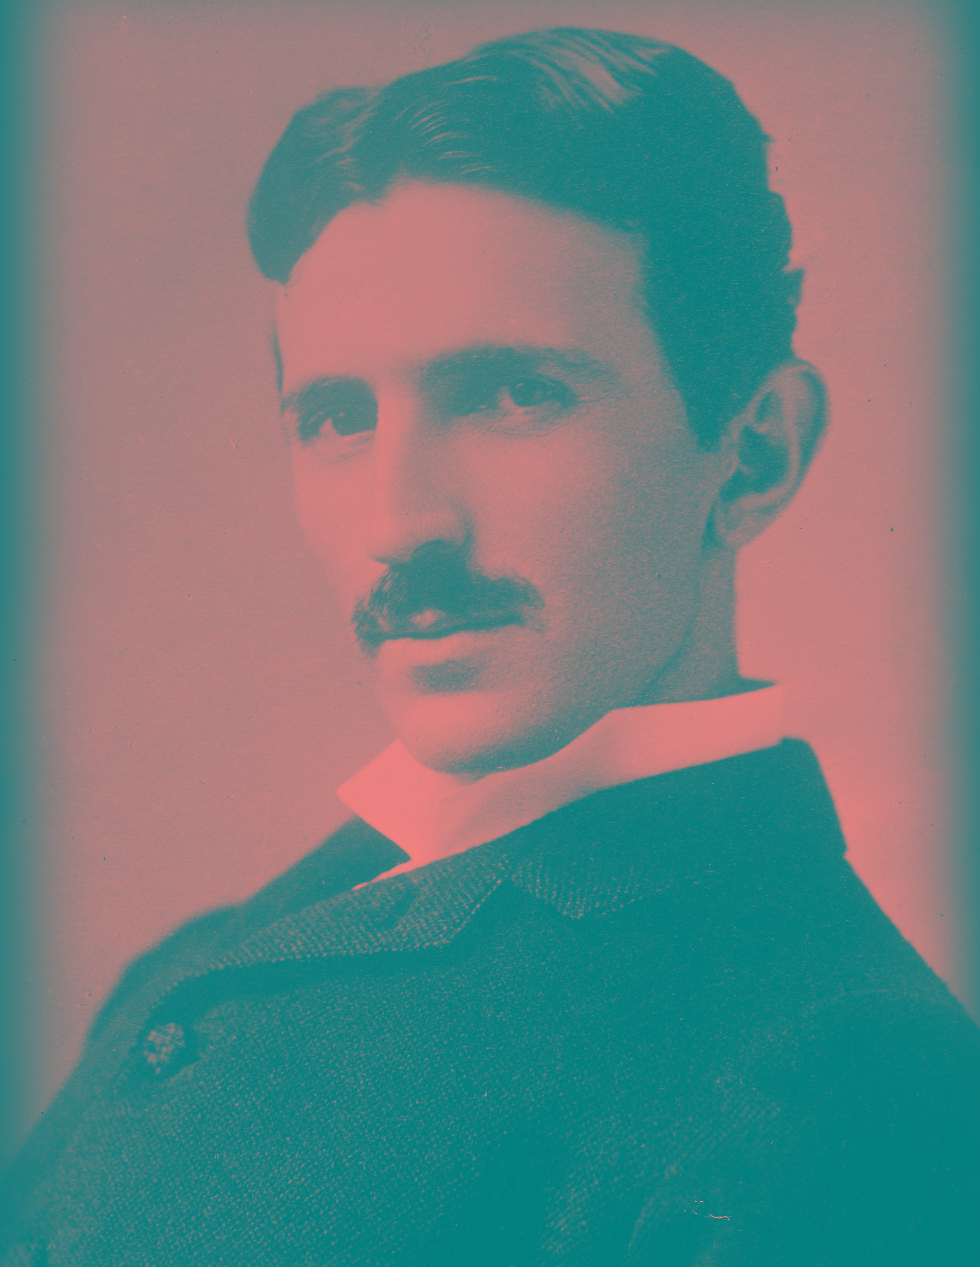 La exposición 'Nikola Tesla. Ideas como relámpagos' se inaugura en el Museu de les Ciències el próximo 10 de marzo